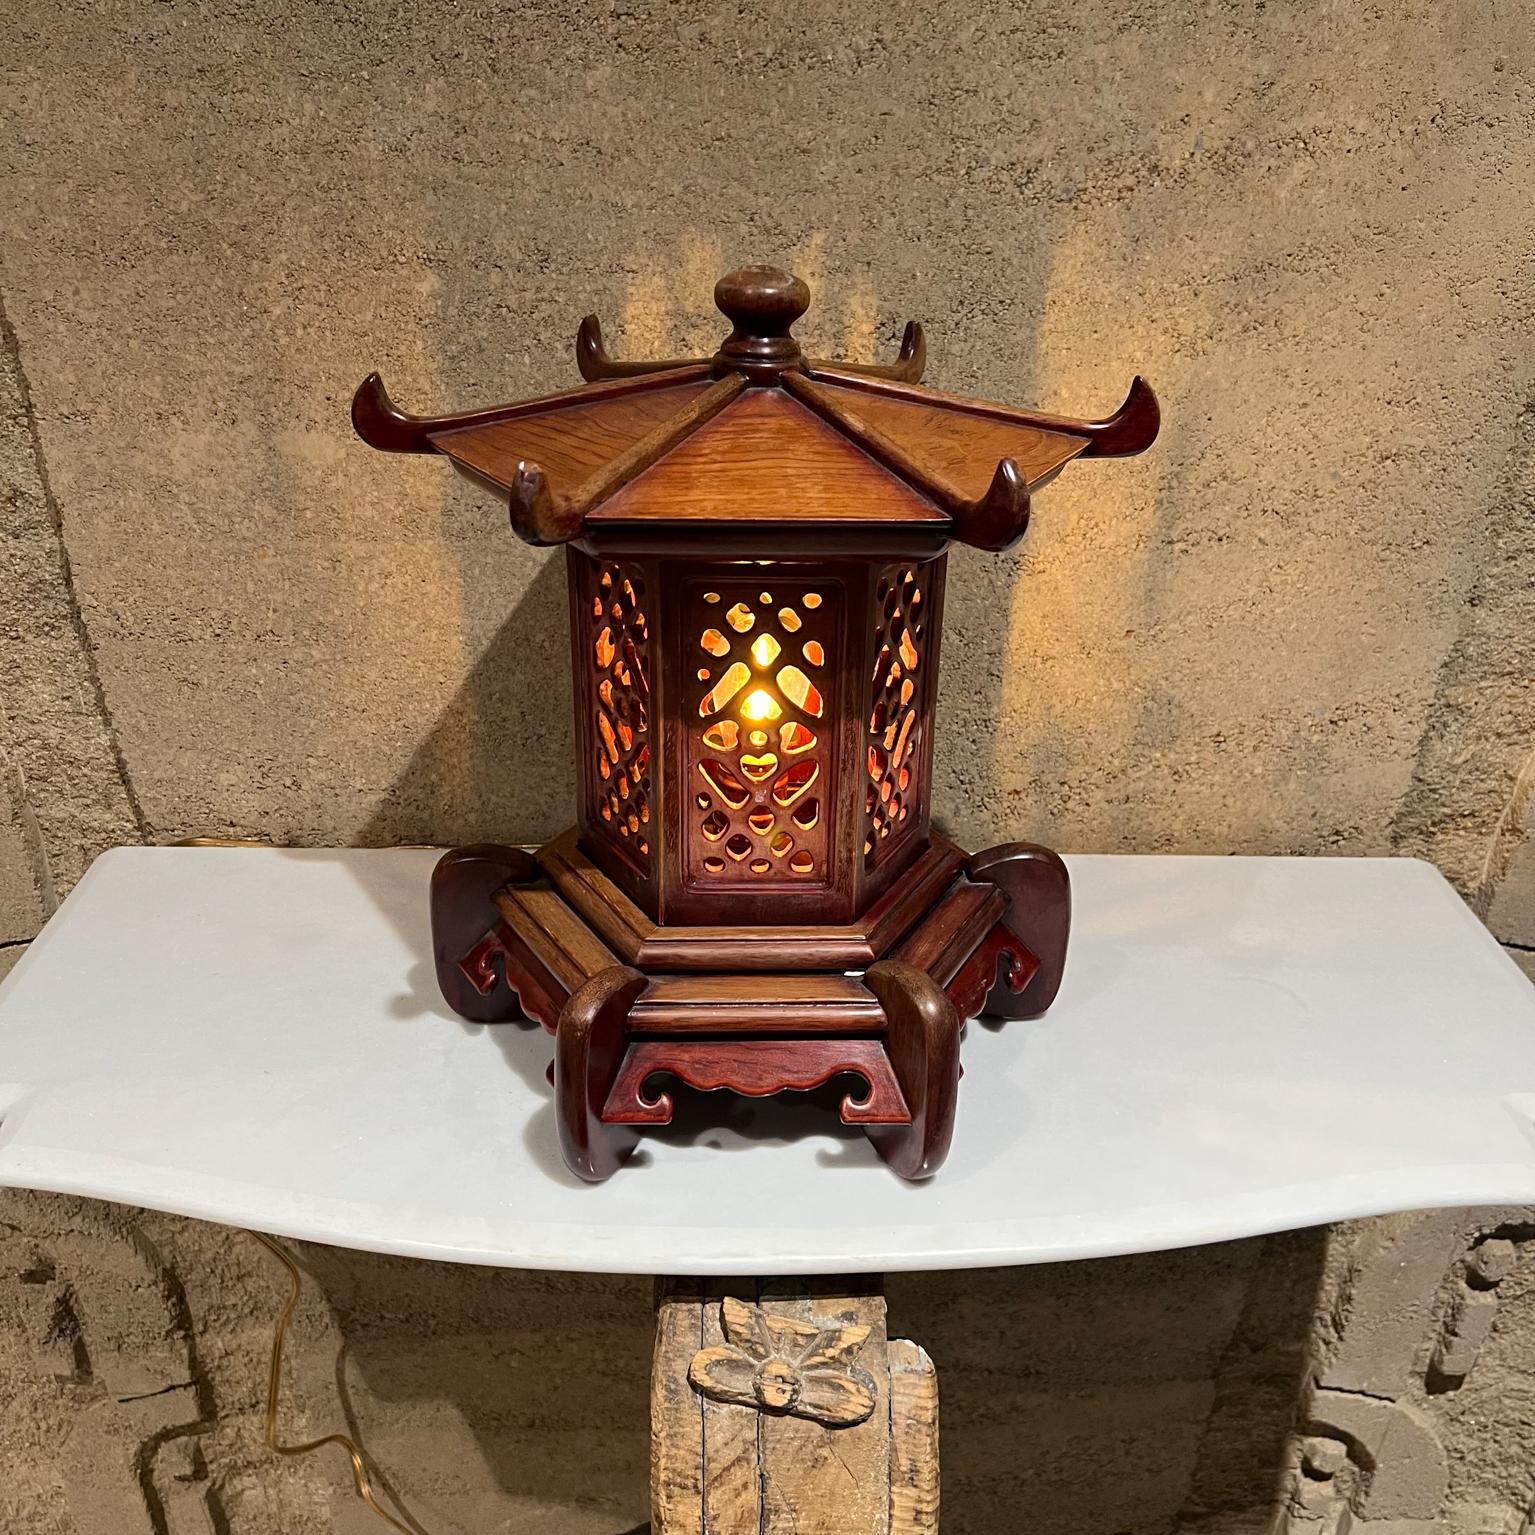 1950s Stunning Vintage Pagoda table lamp Intricate Handcrafted wood 
14.5 de haut x 13,5 de diamètre
État vintage d'origine non restauré.
Voir les images fournies s'il vous plaît.